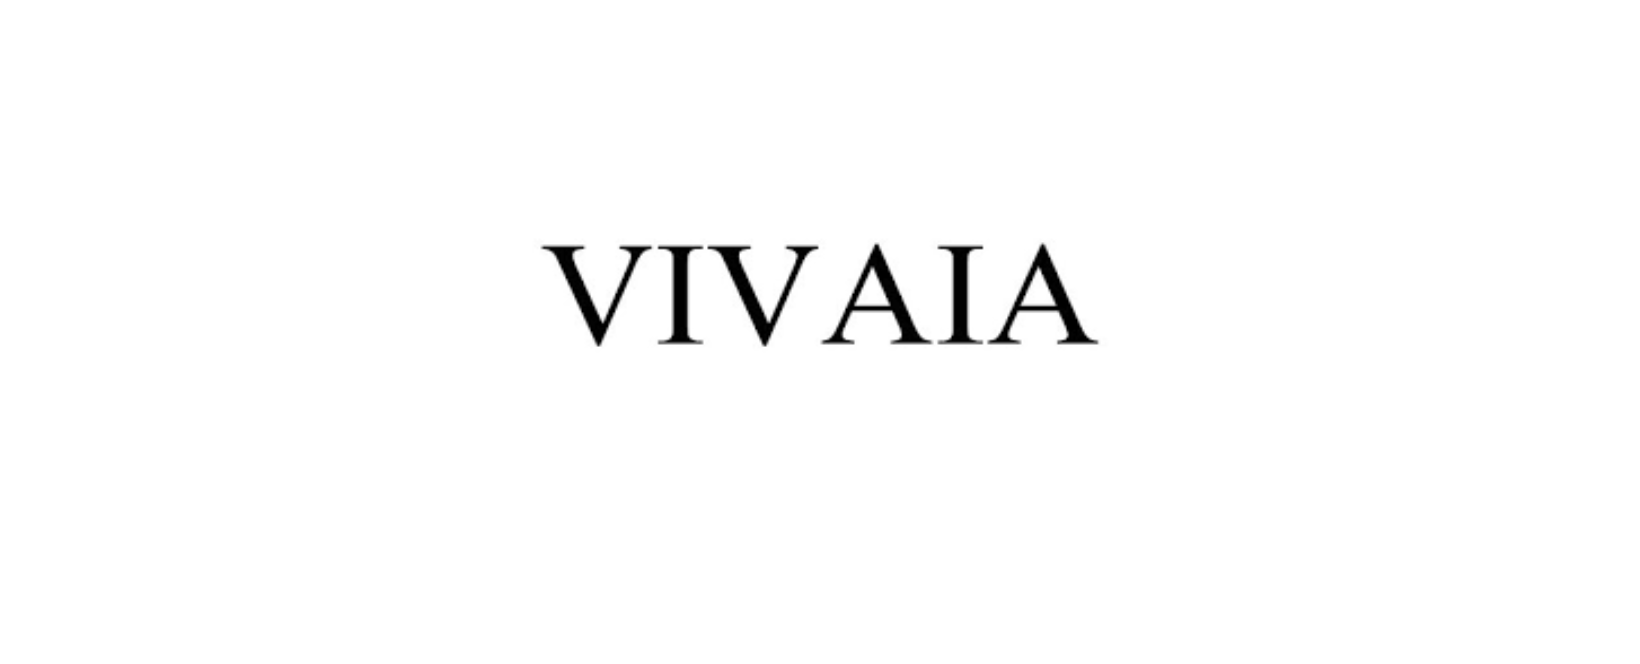 VIVAIA Discount Code 2022